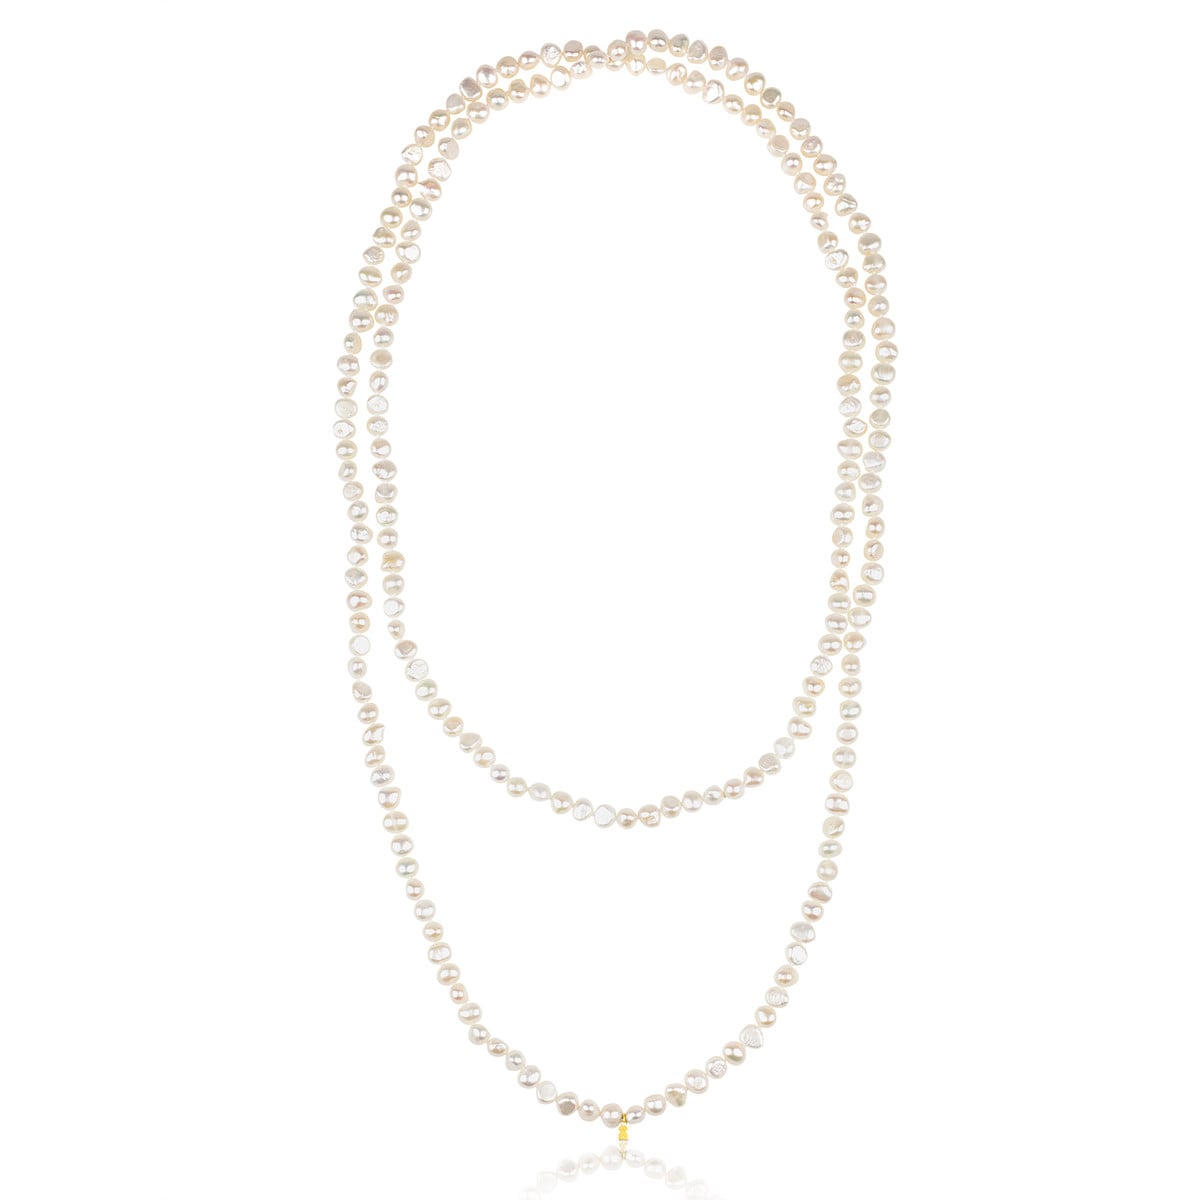 Gold TOUS Pearls Necklace - Tous Site US